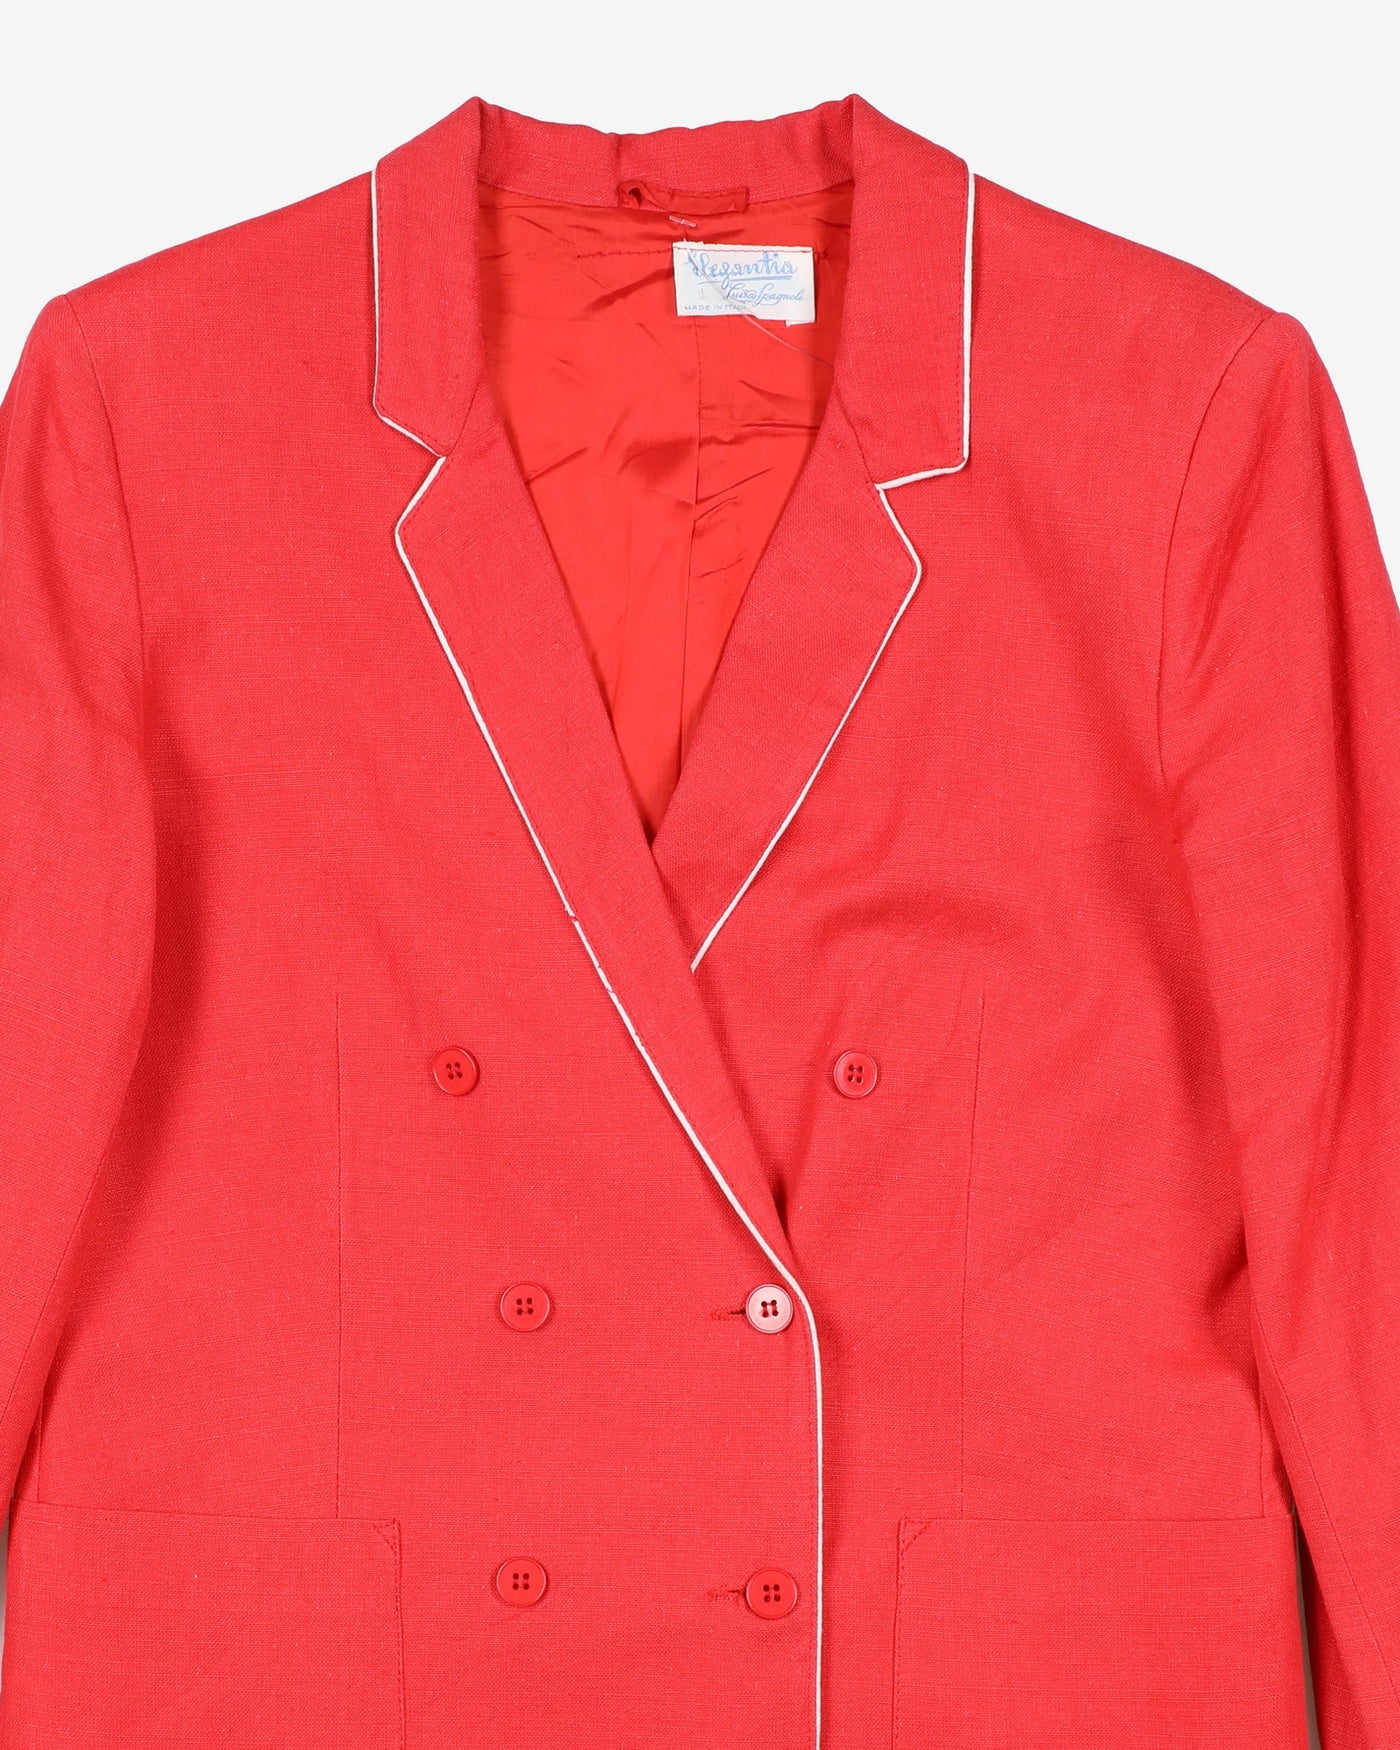 Vintage red blazer - S